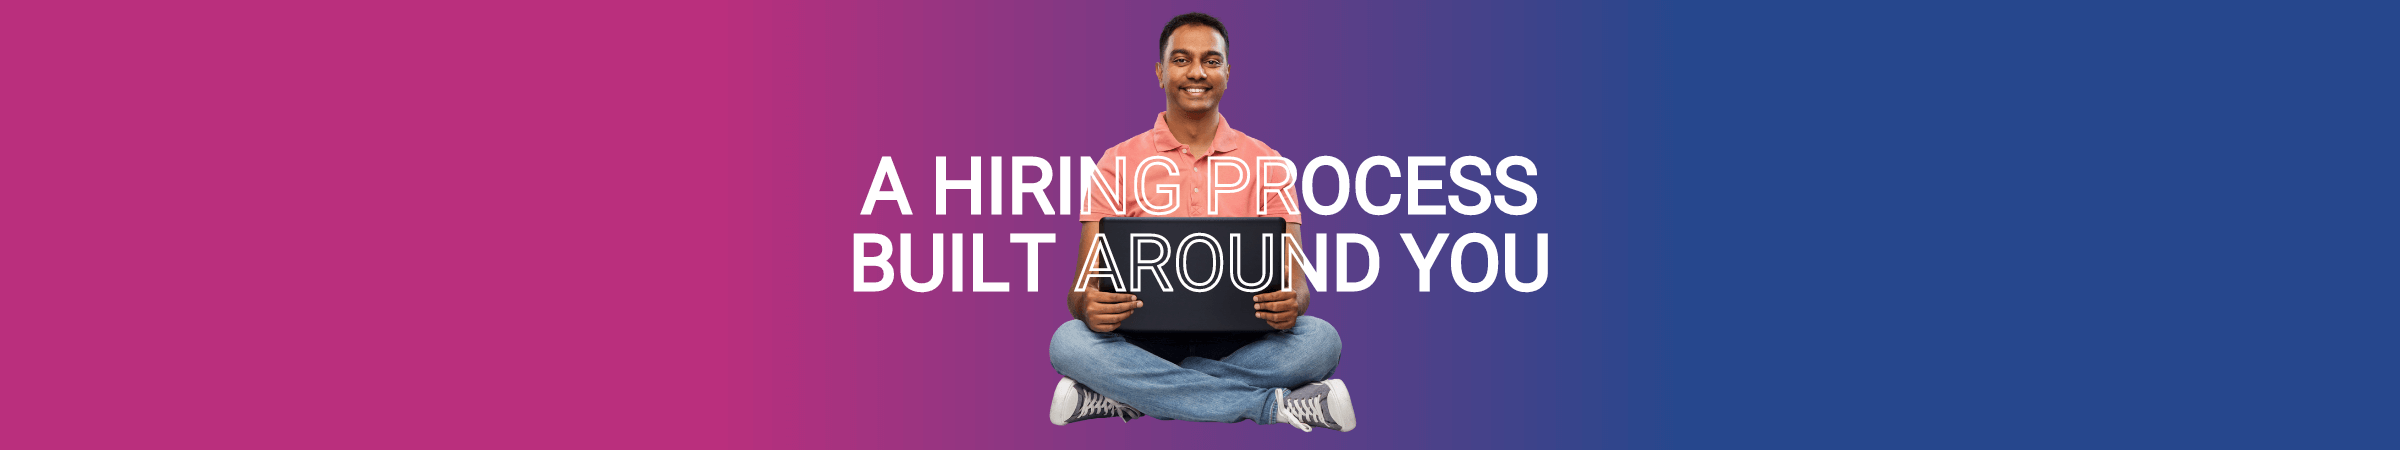 A hiring process built around YOU